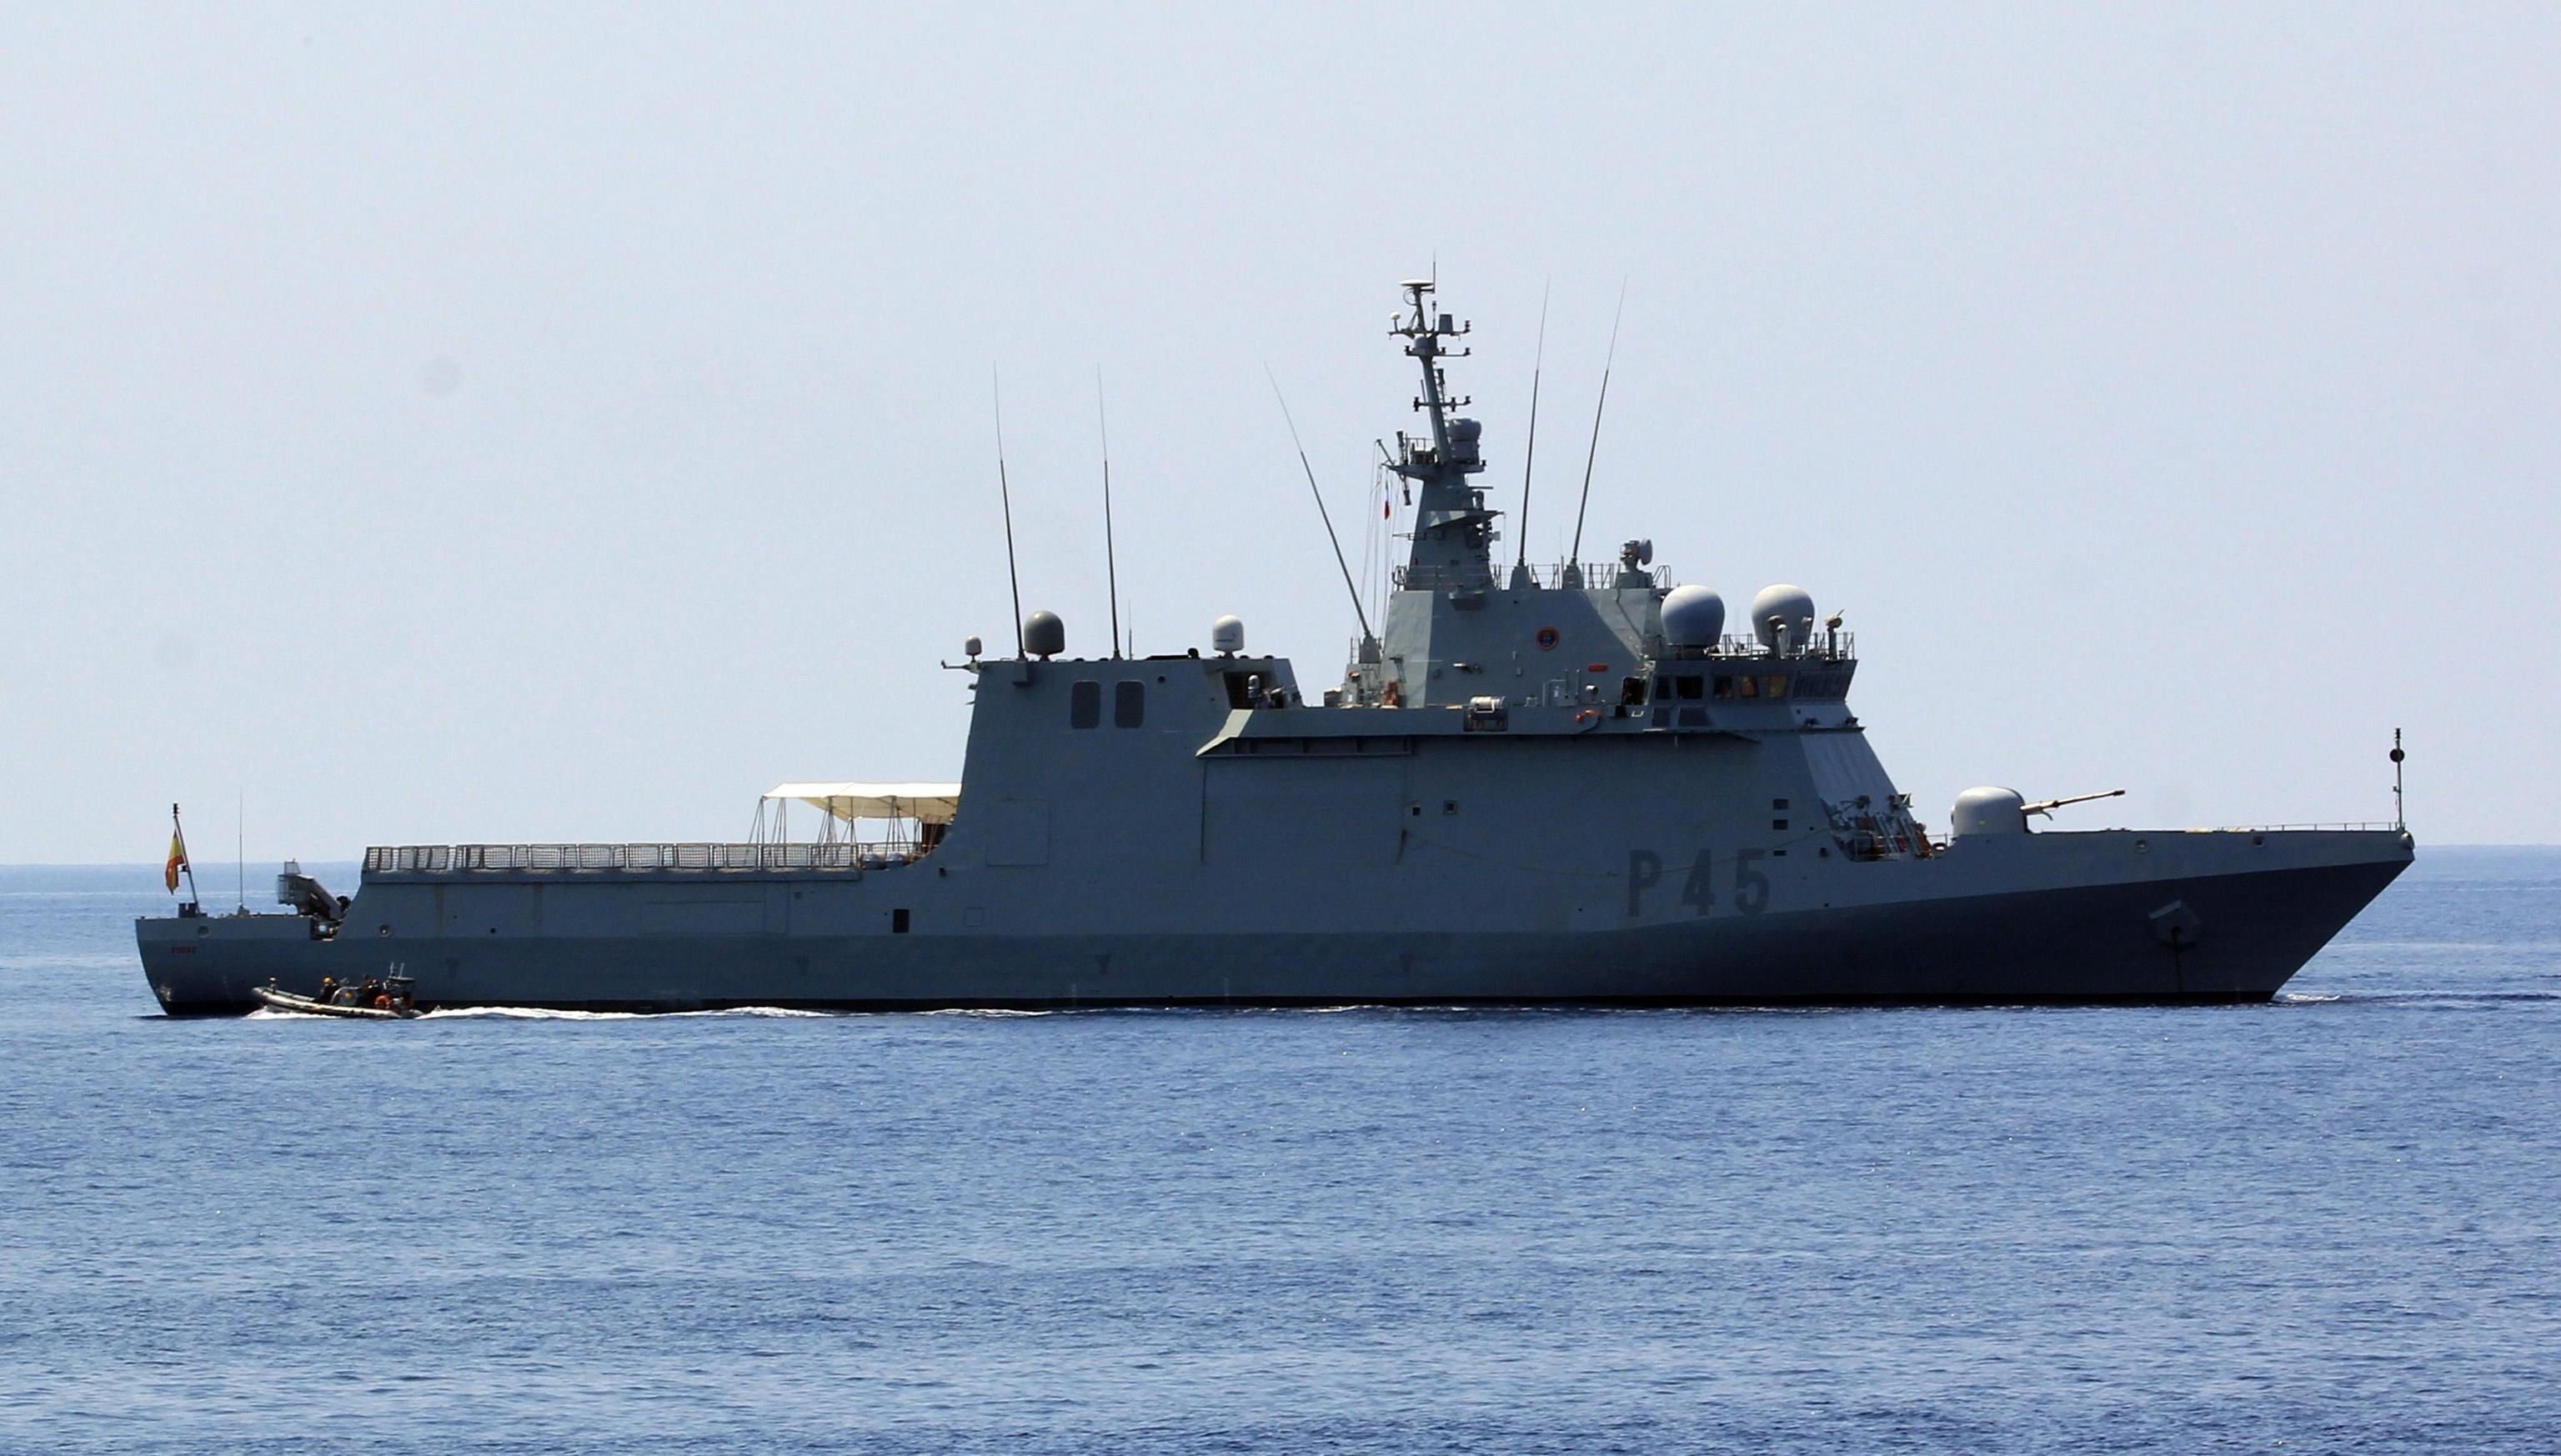 El buque de la armada es demasiado grande y no cabe en el puerto de Lampedusa